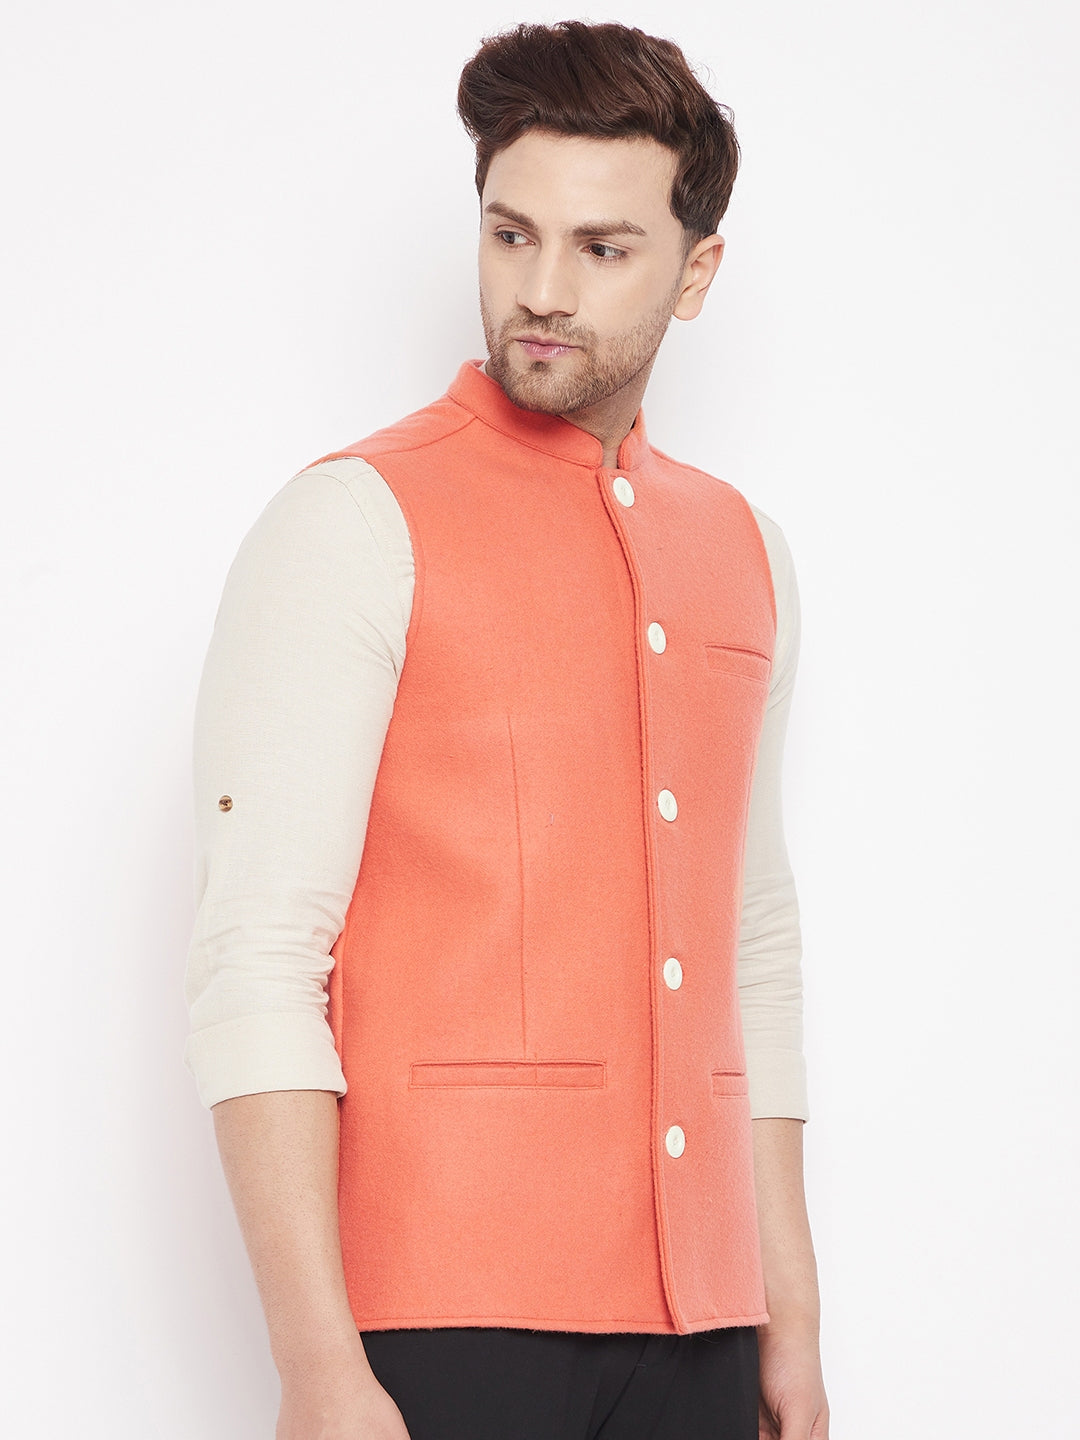 Men's Orange Color Woven Nehru Jacket - Even Apparels